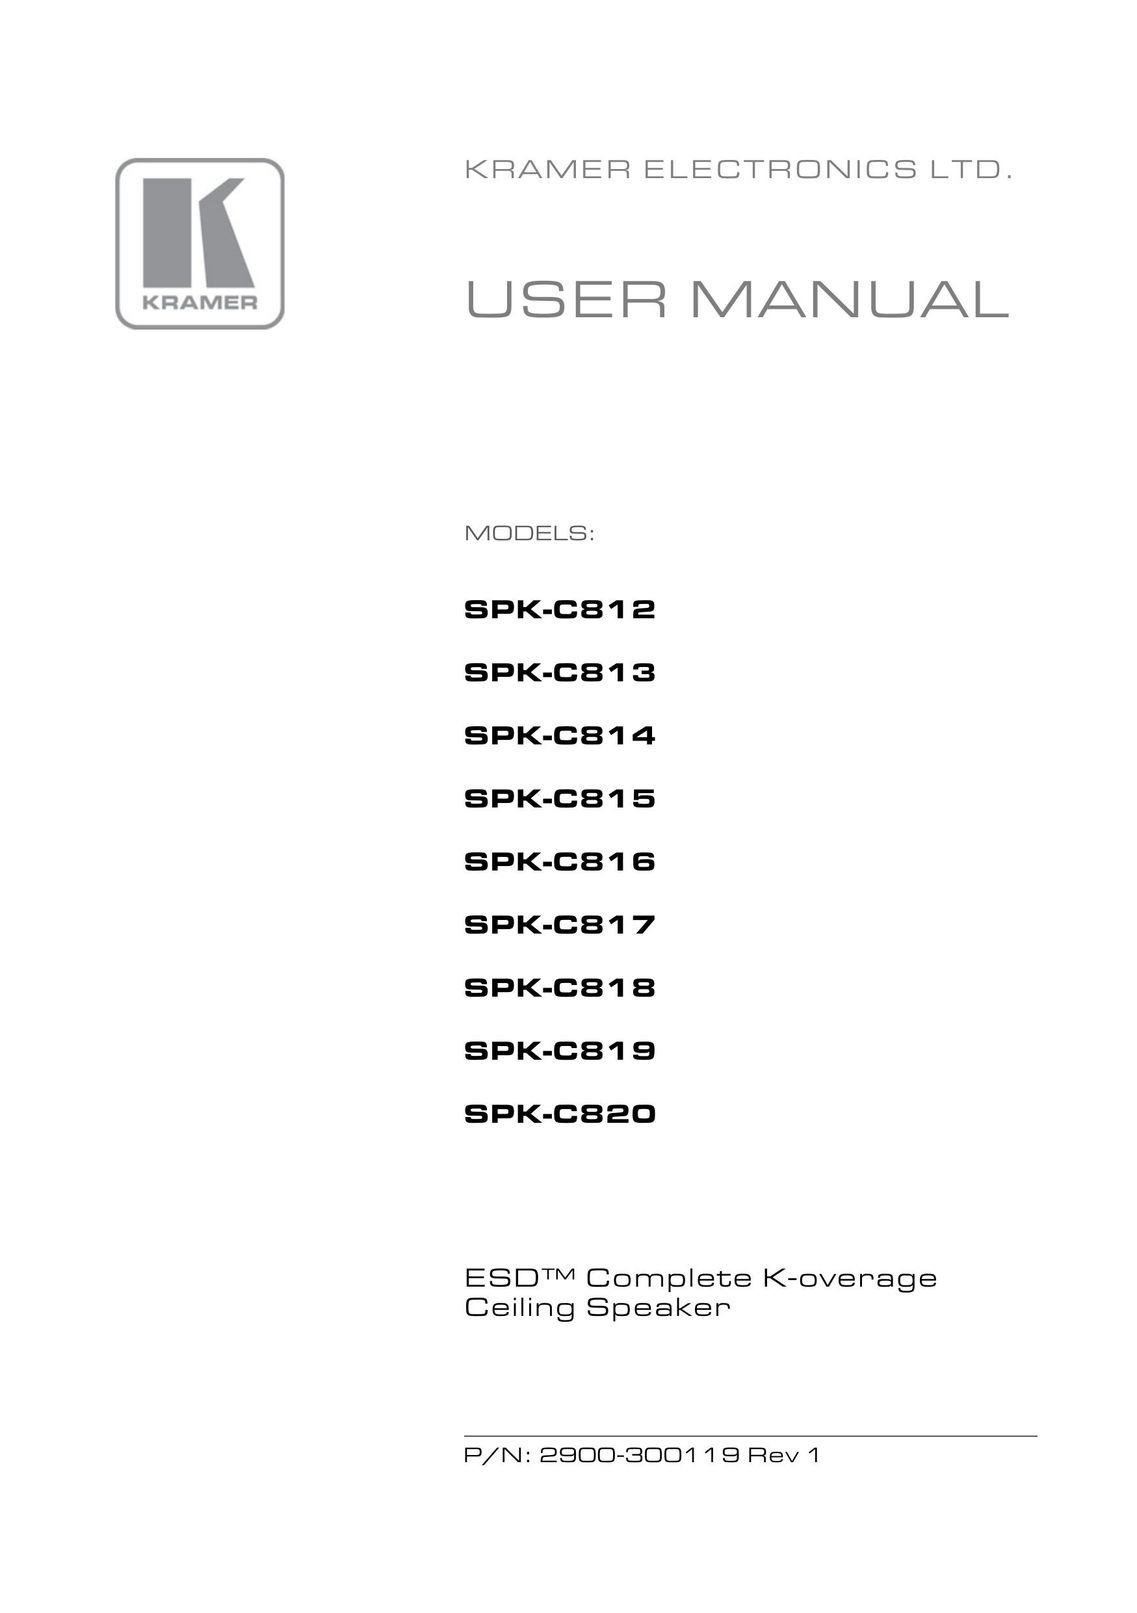 Kramer Electronics spk-cs12 Speaker User Manual